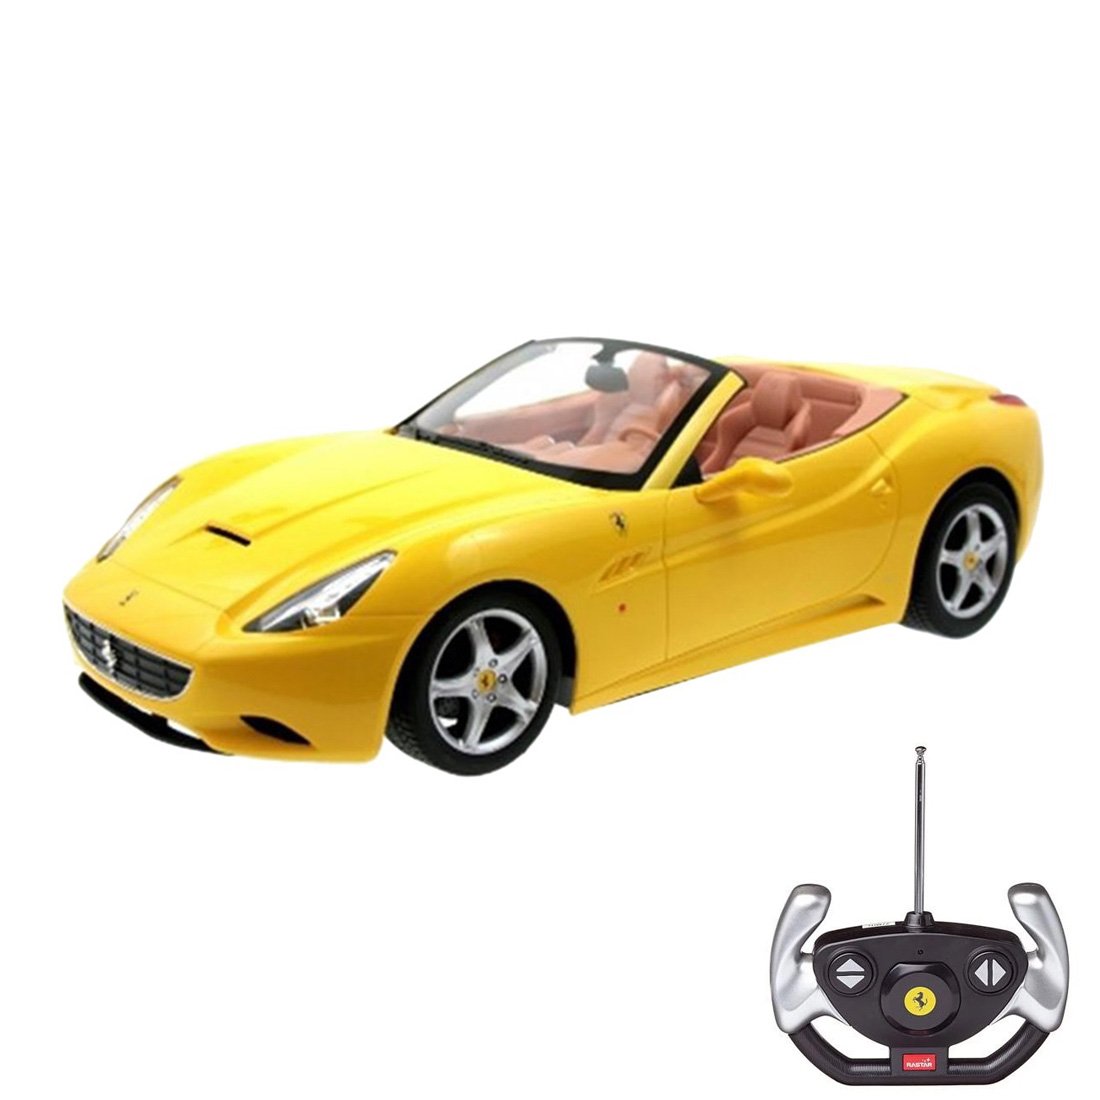 Poze Masina cu telecomanda Rastar Ferrari California 1:12, Galben